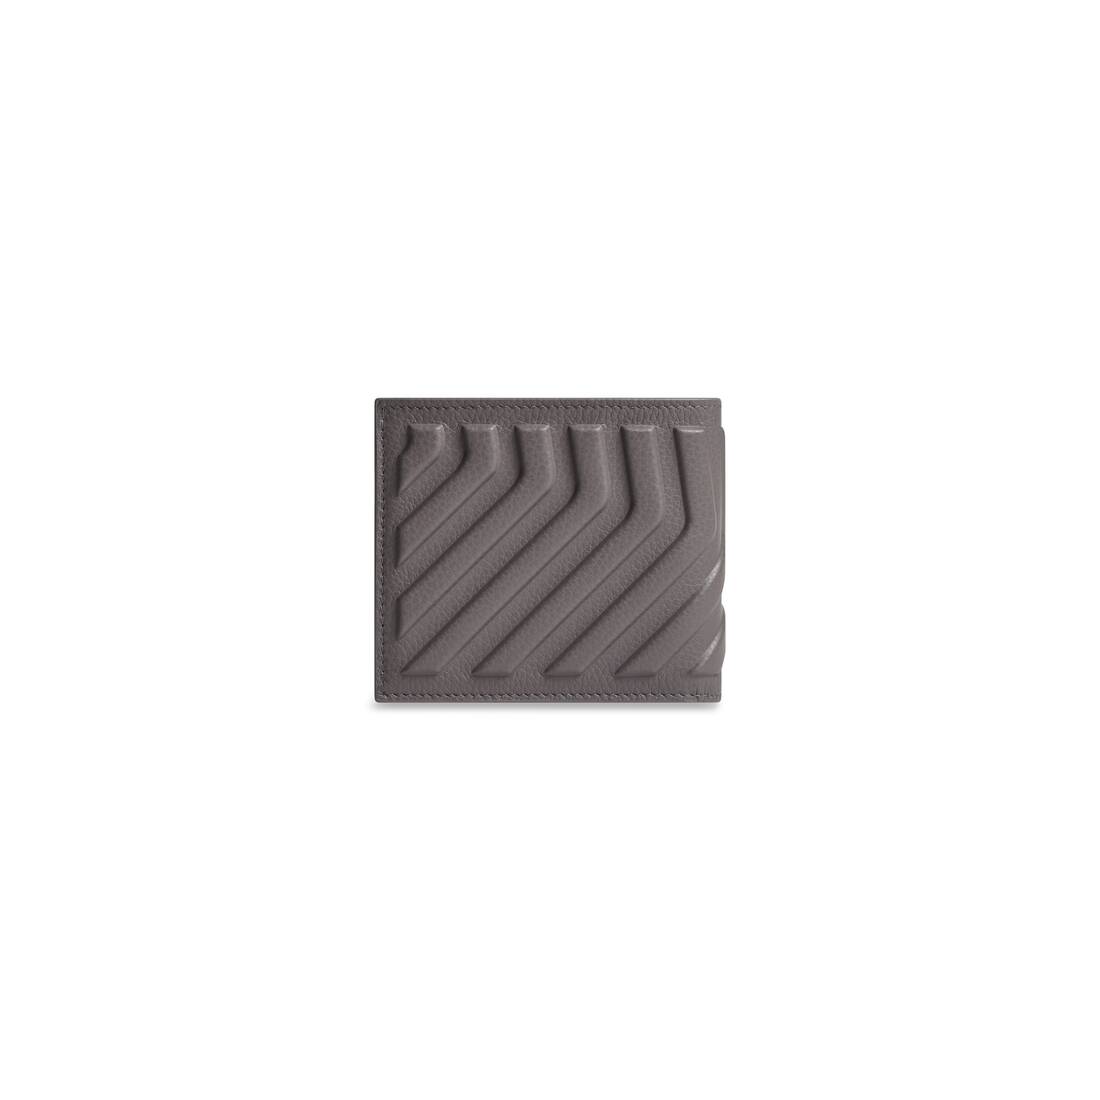 Balenciaga Black Leather Grid Square Wallet Balenciaga